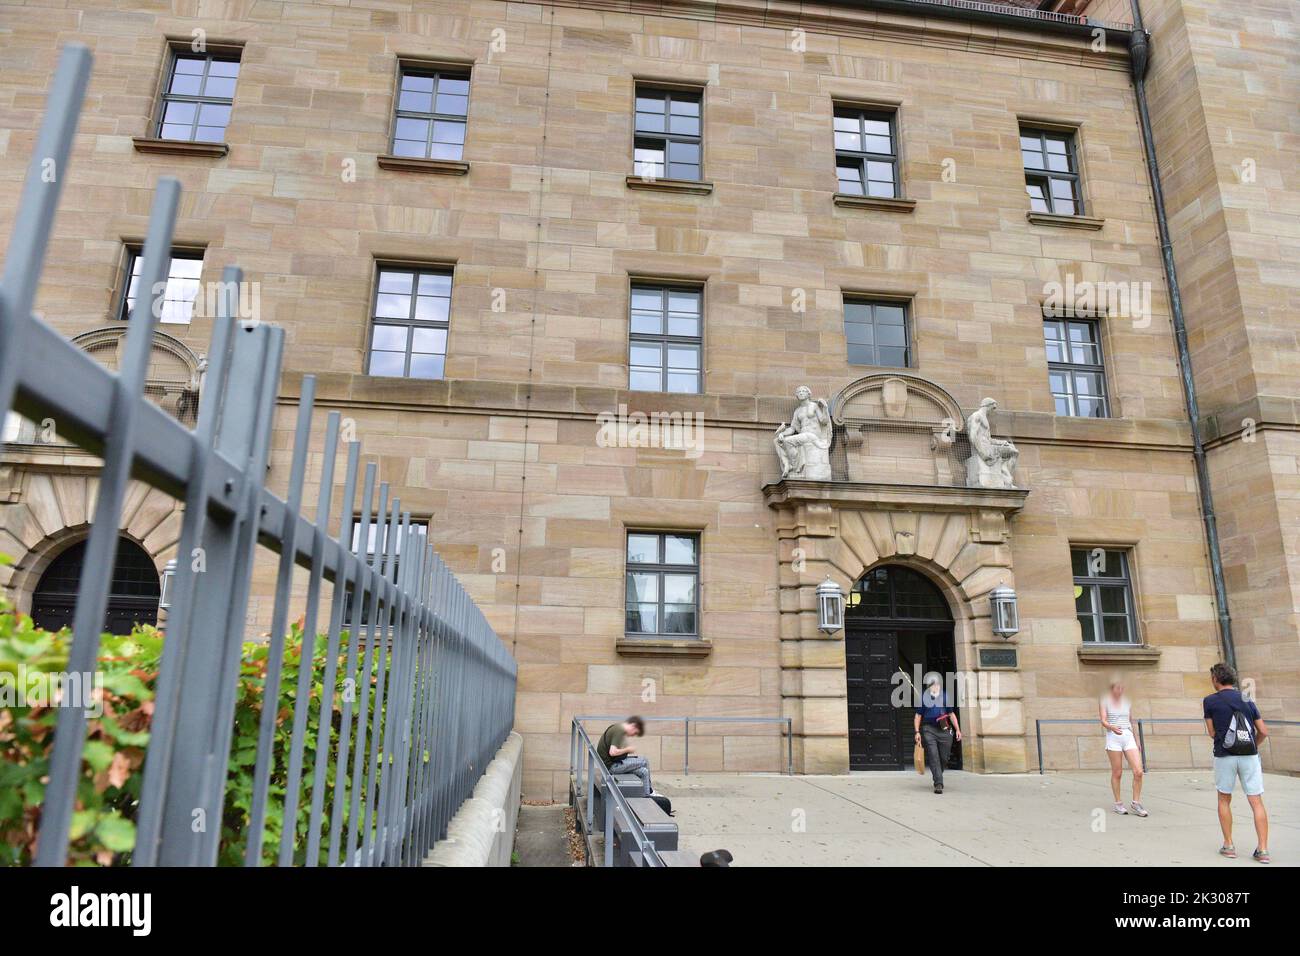 Memorium der Nürnberger Prozesse, die ersten Strafprozesse vor einem internationalen Militärgericht fanden hier im Jurygerichtsraum 600 statt Stockfoto